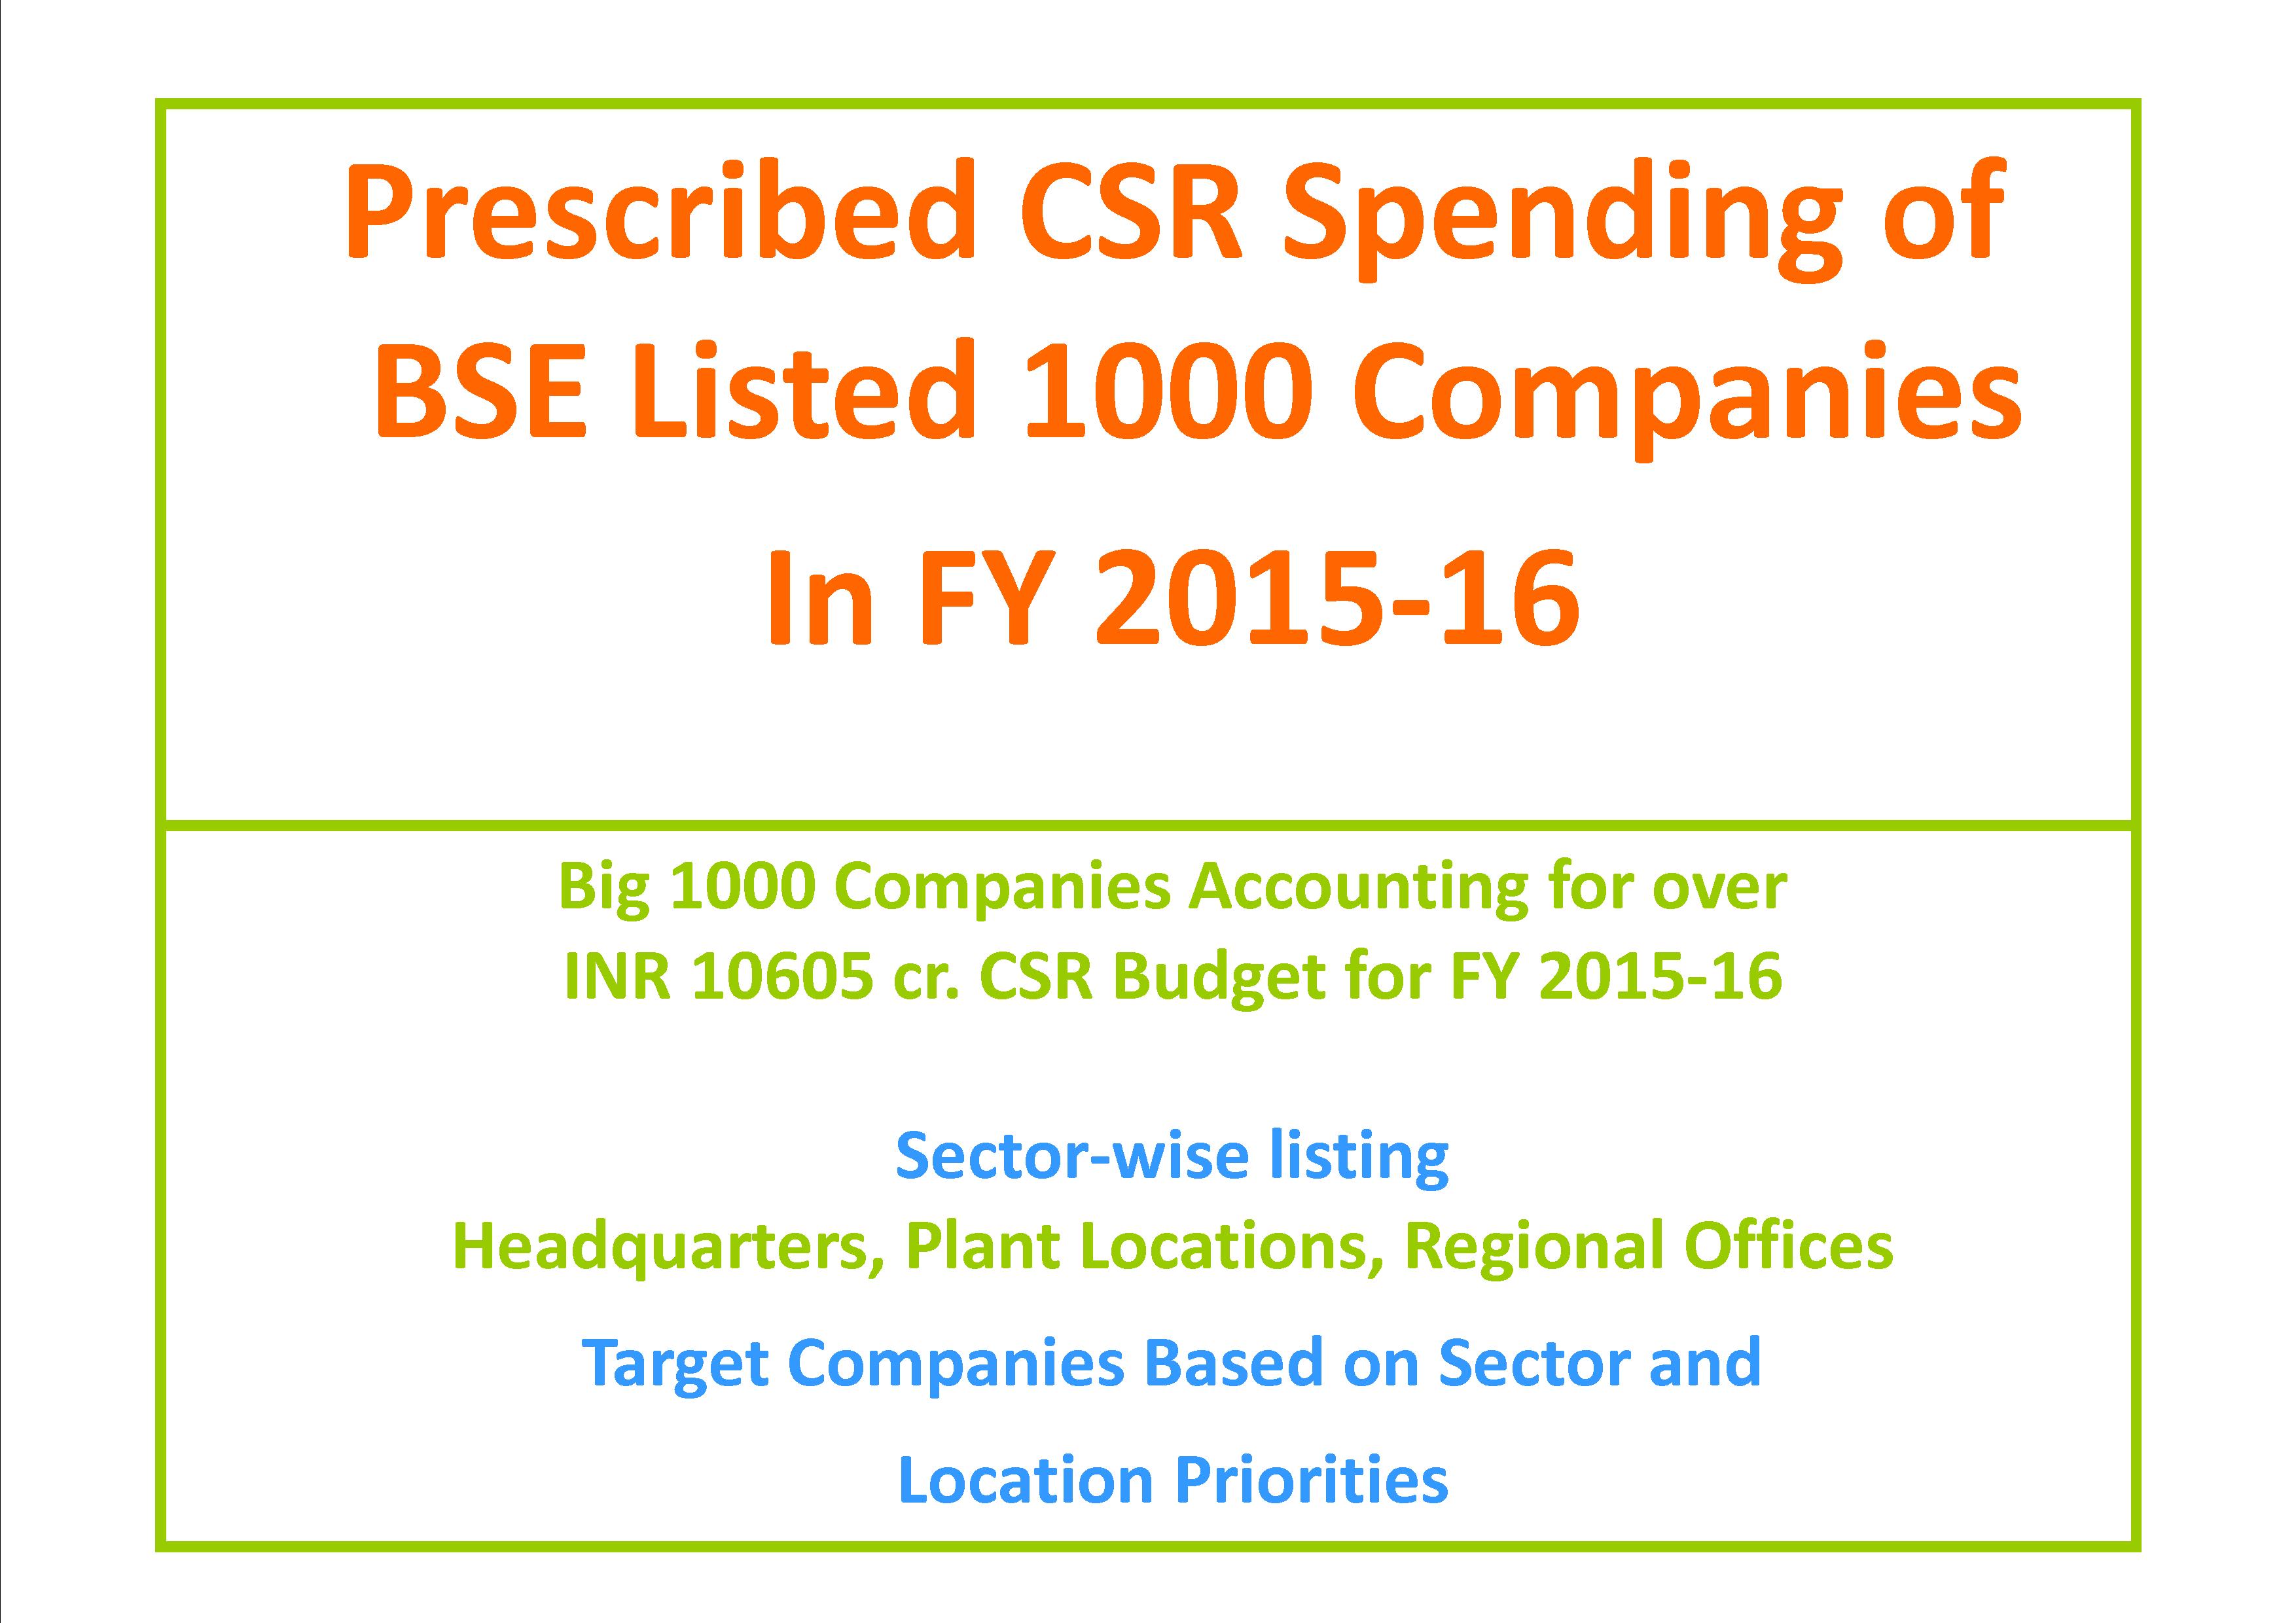 Prescribed CSR Spending Budget of Big 1000 Companies in FY 2015-16